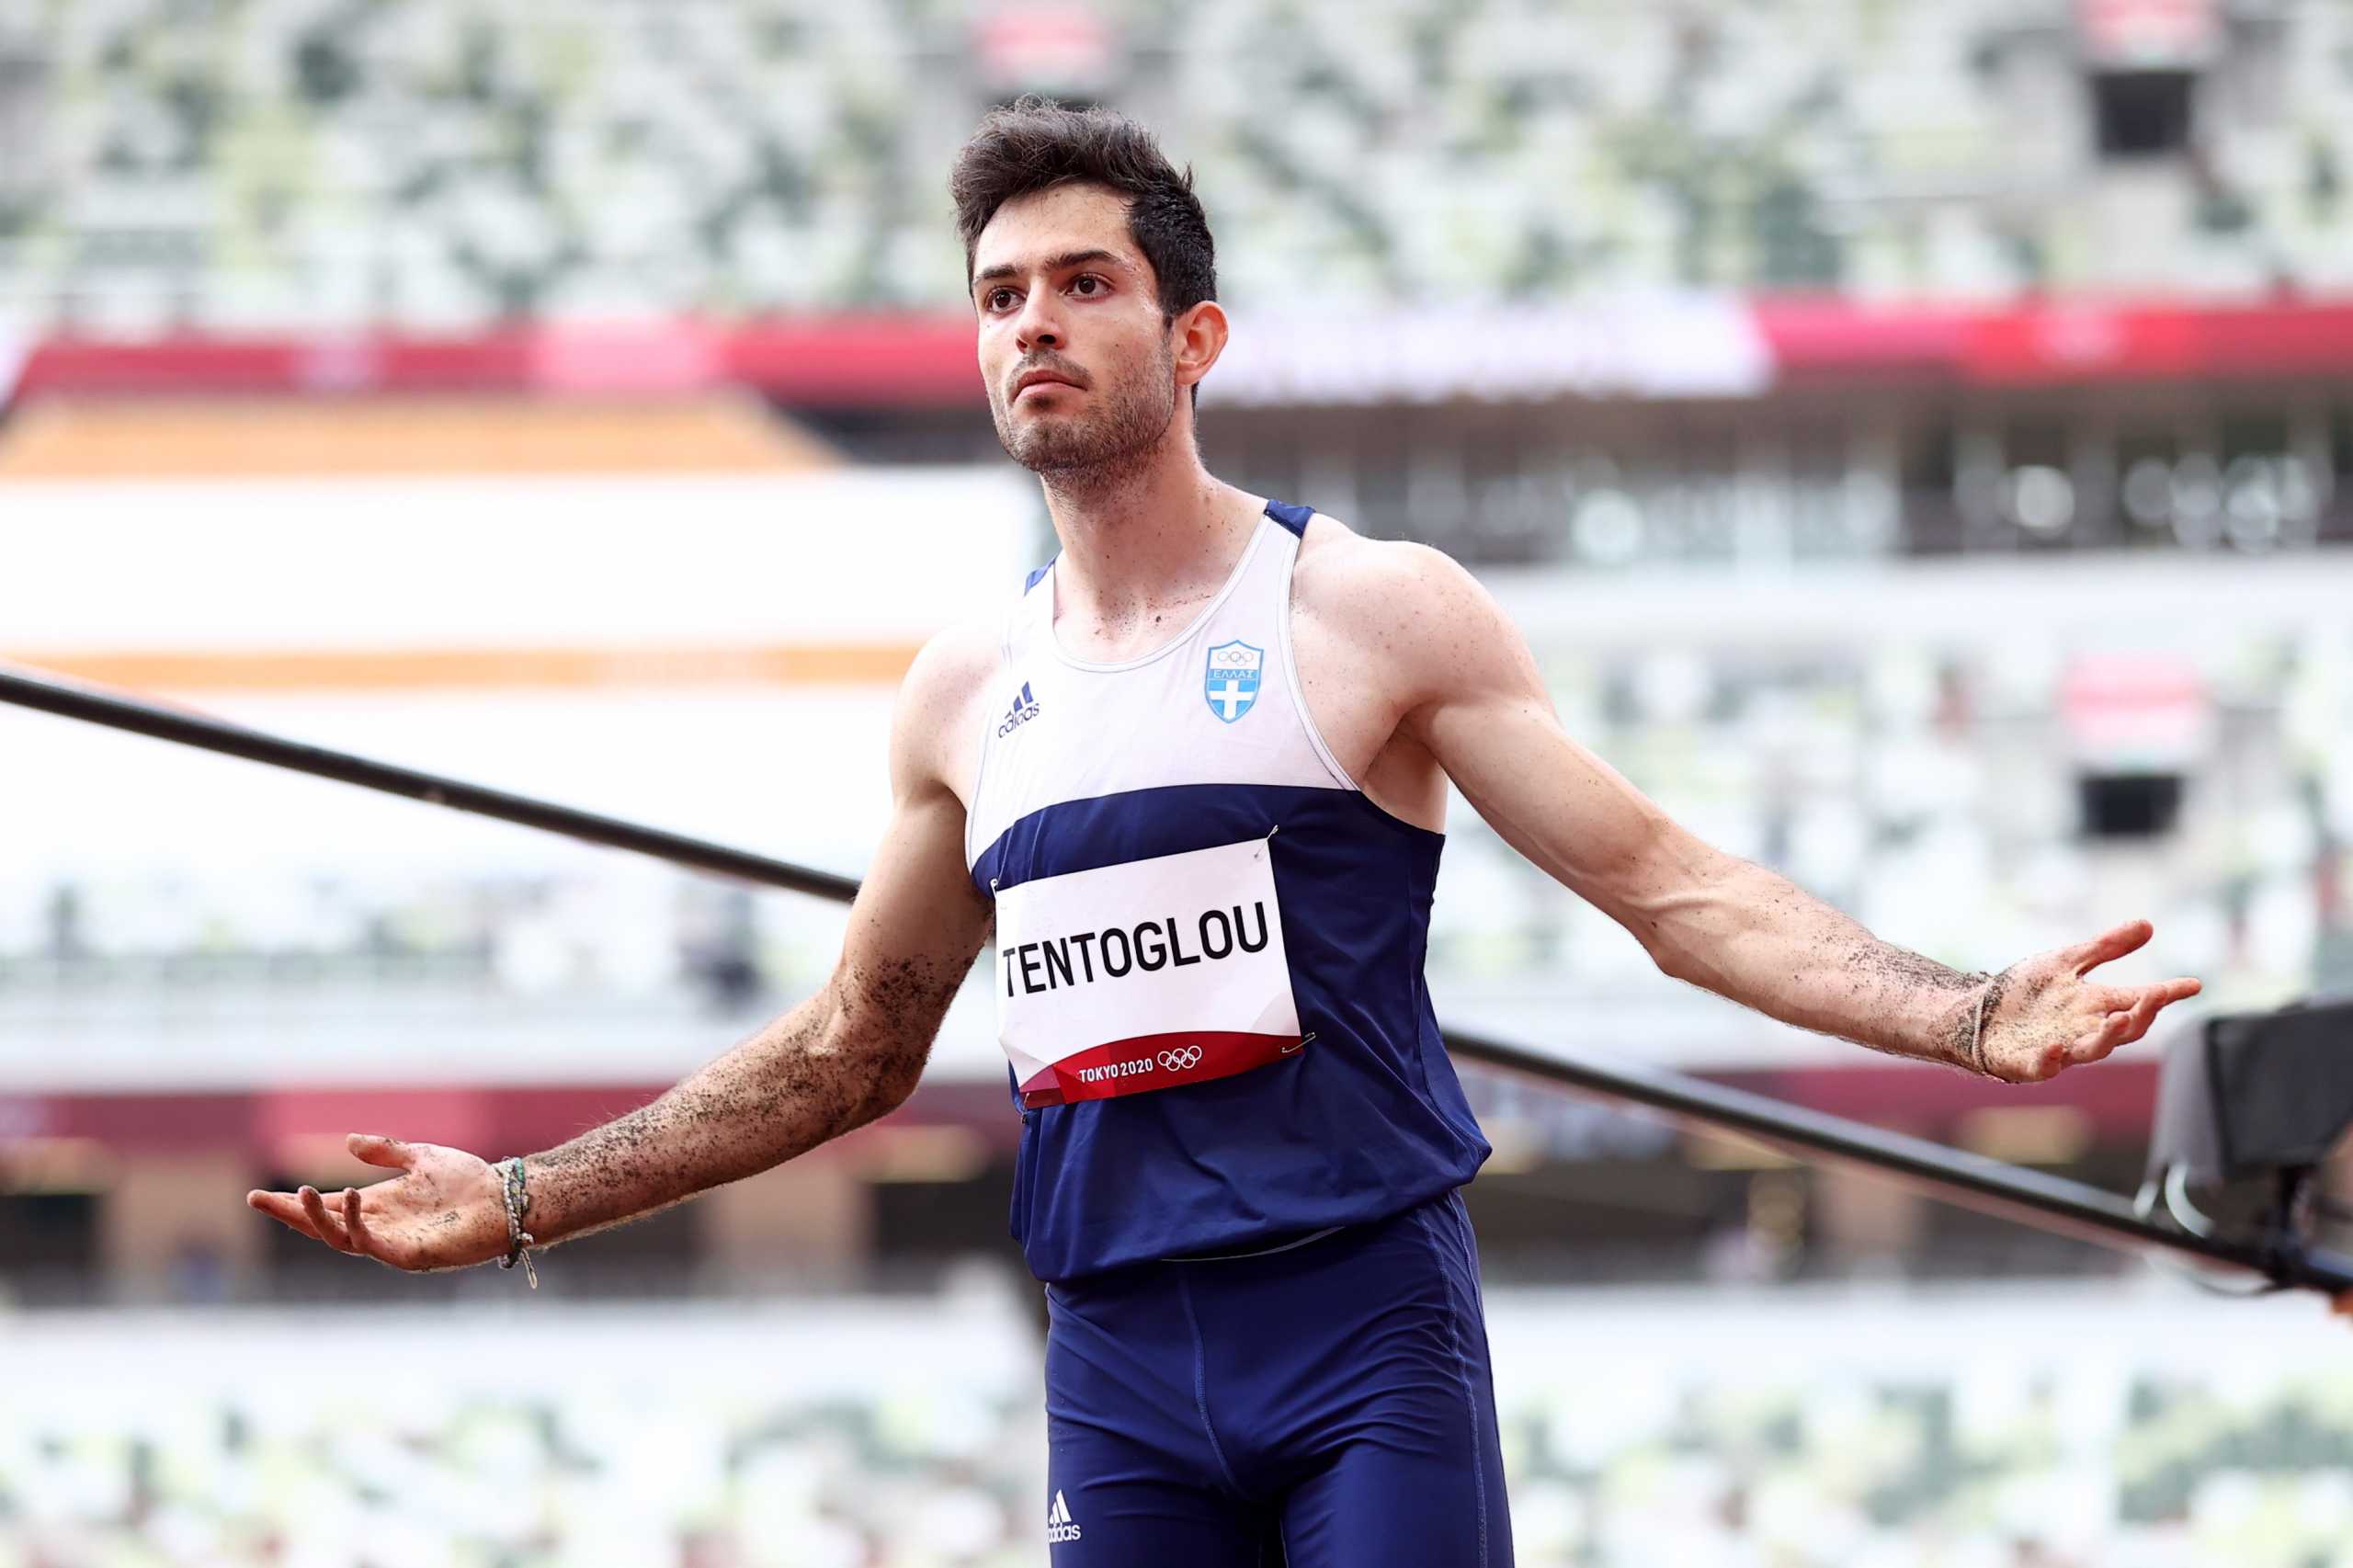 Μίλτος Τεντόγλου: Πότε επιστρέφει στην Ελλάδα ο χρυσός ολυμπιονίκης